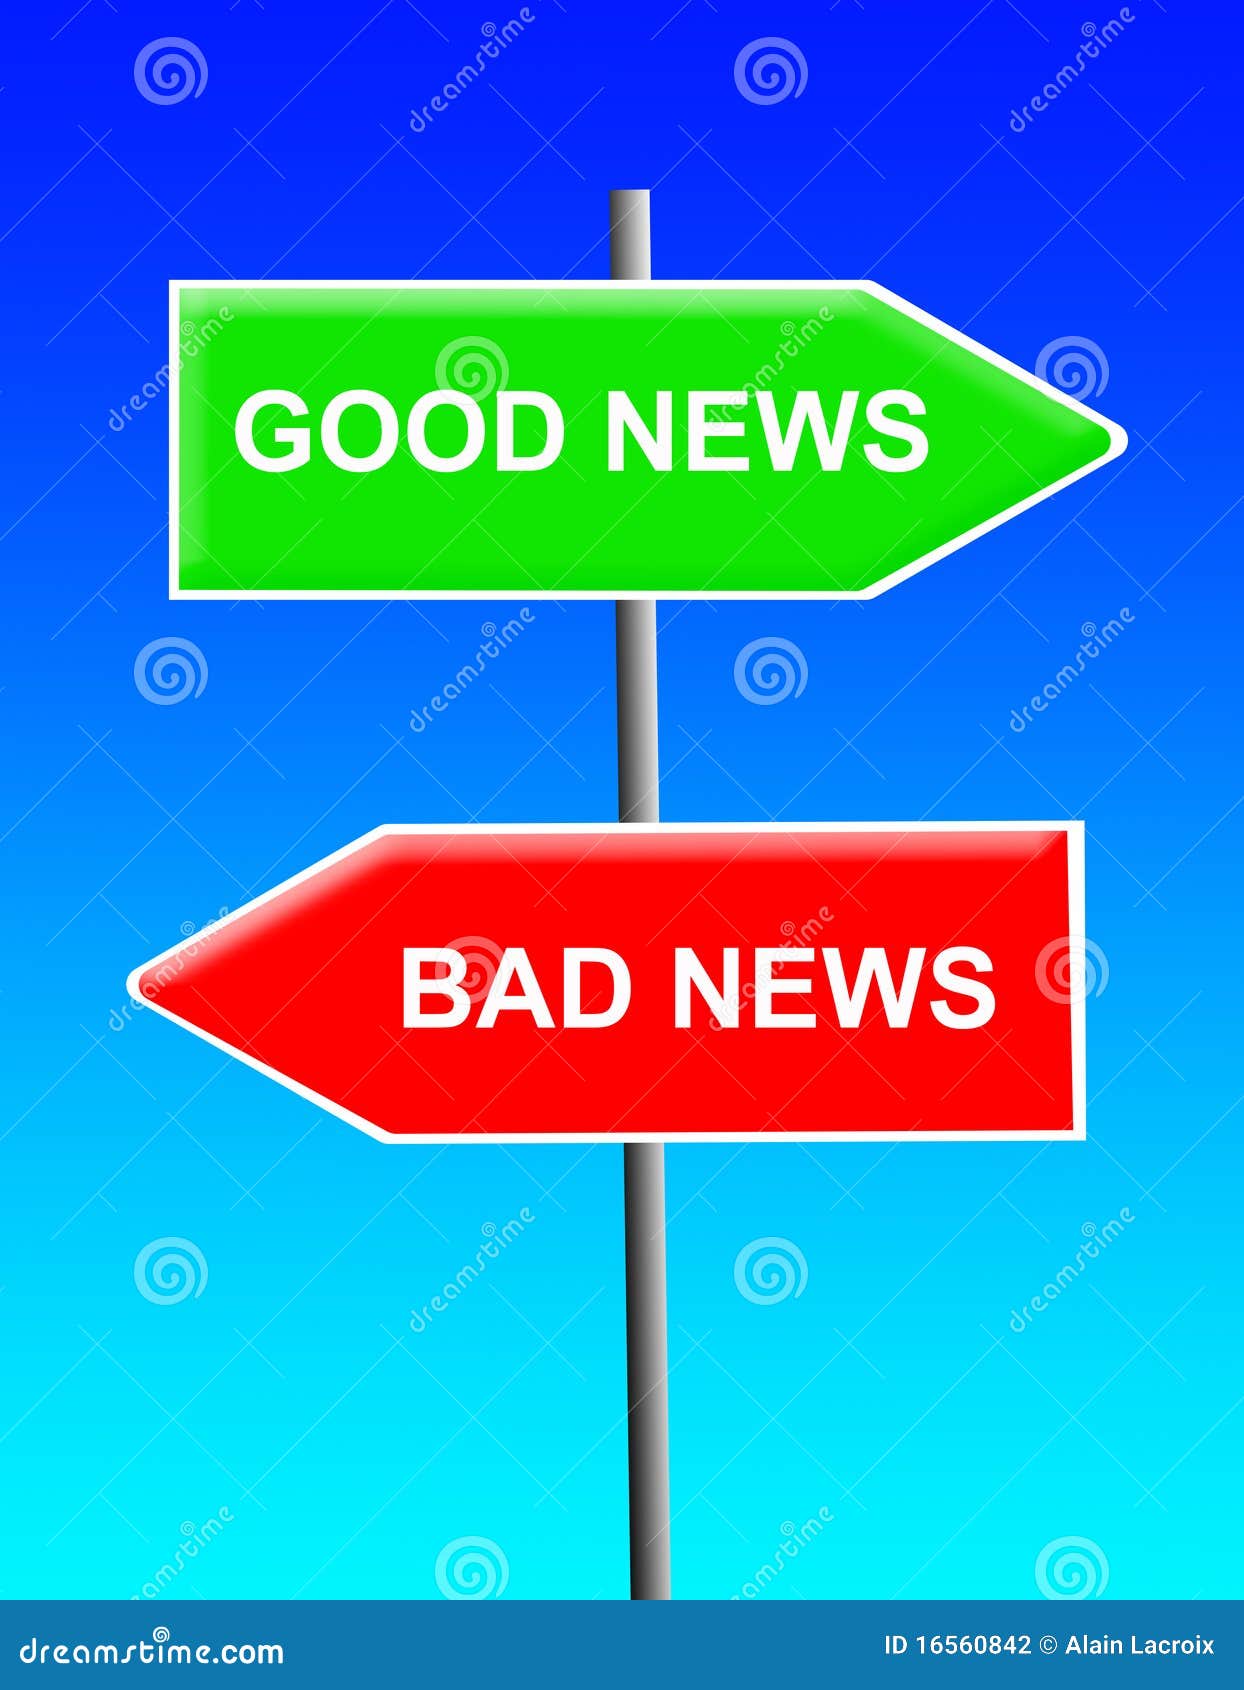 Good News, Bad News Stock Photography - Image: 16560842